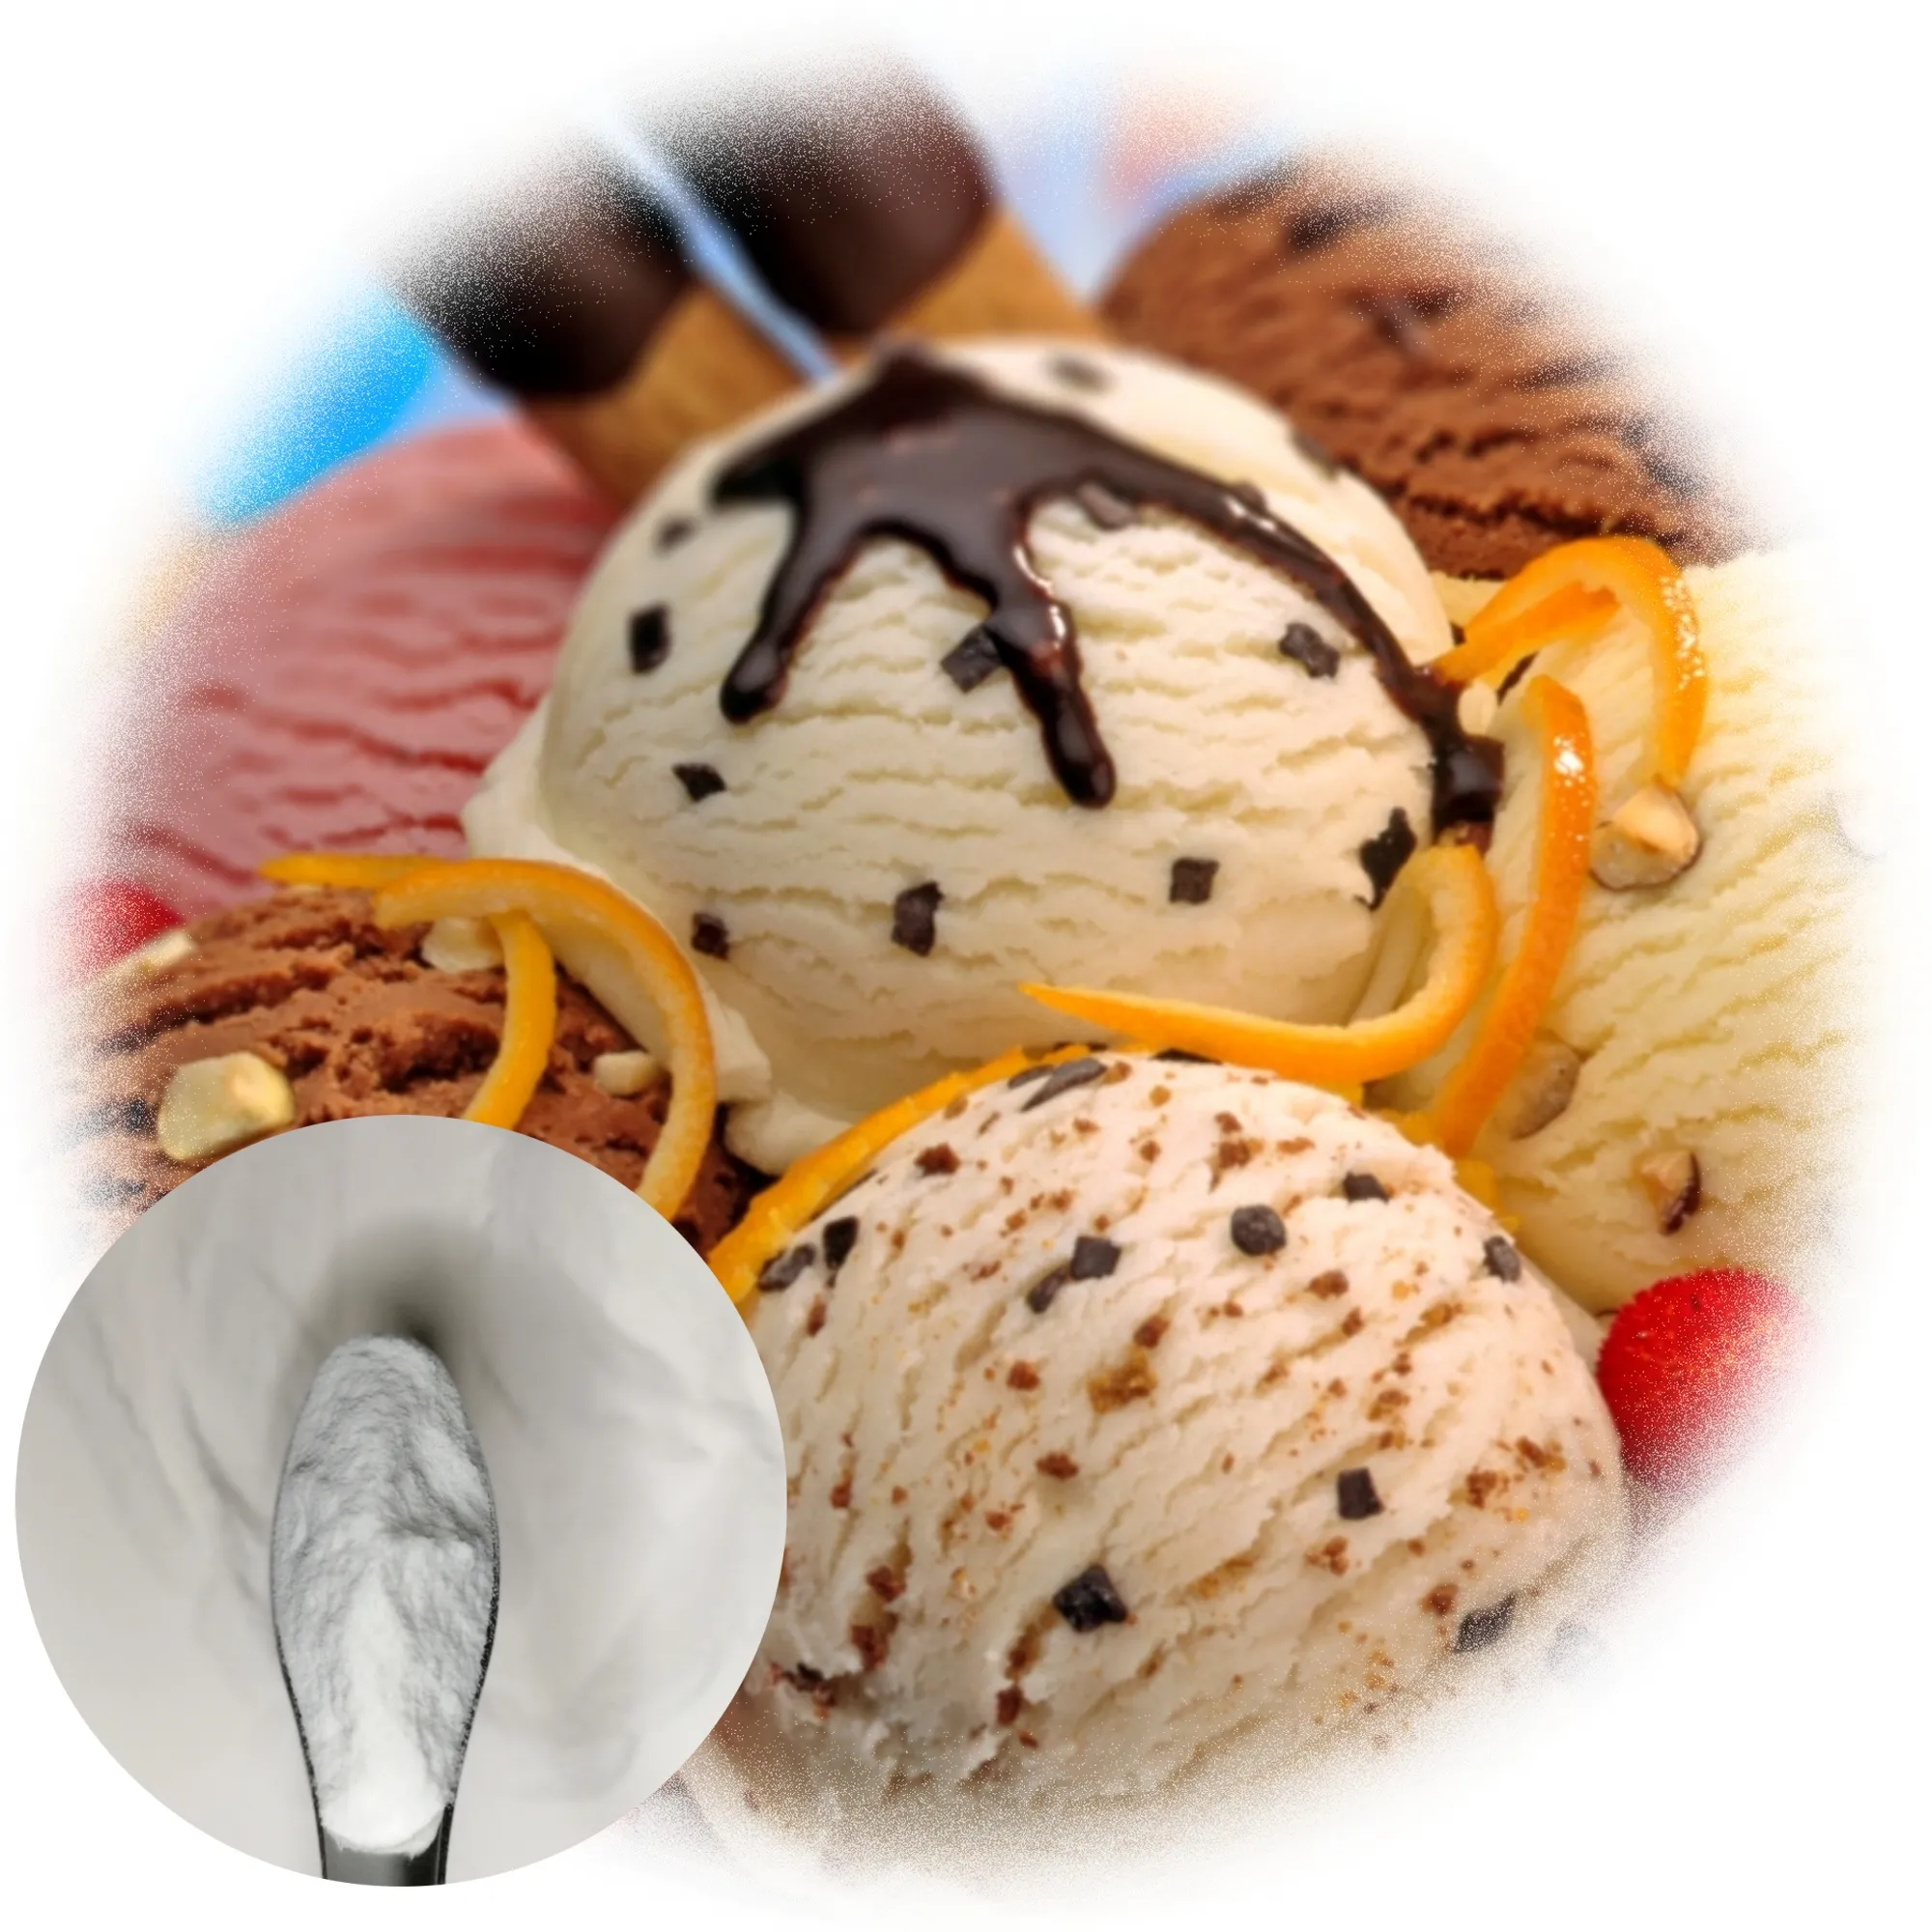 アイスクリーム安定剤用食品グレードcmc粉末カルボキシメチルセルロースナトリウム